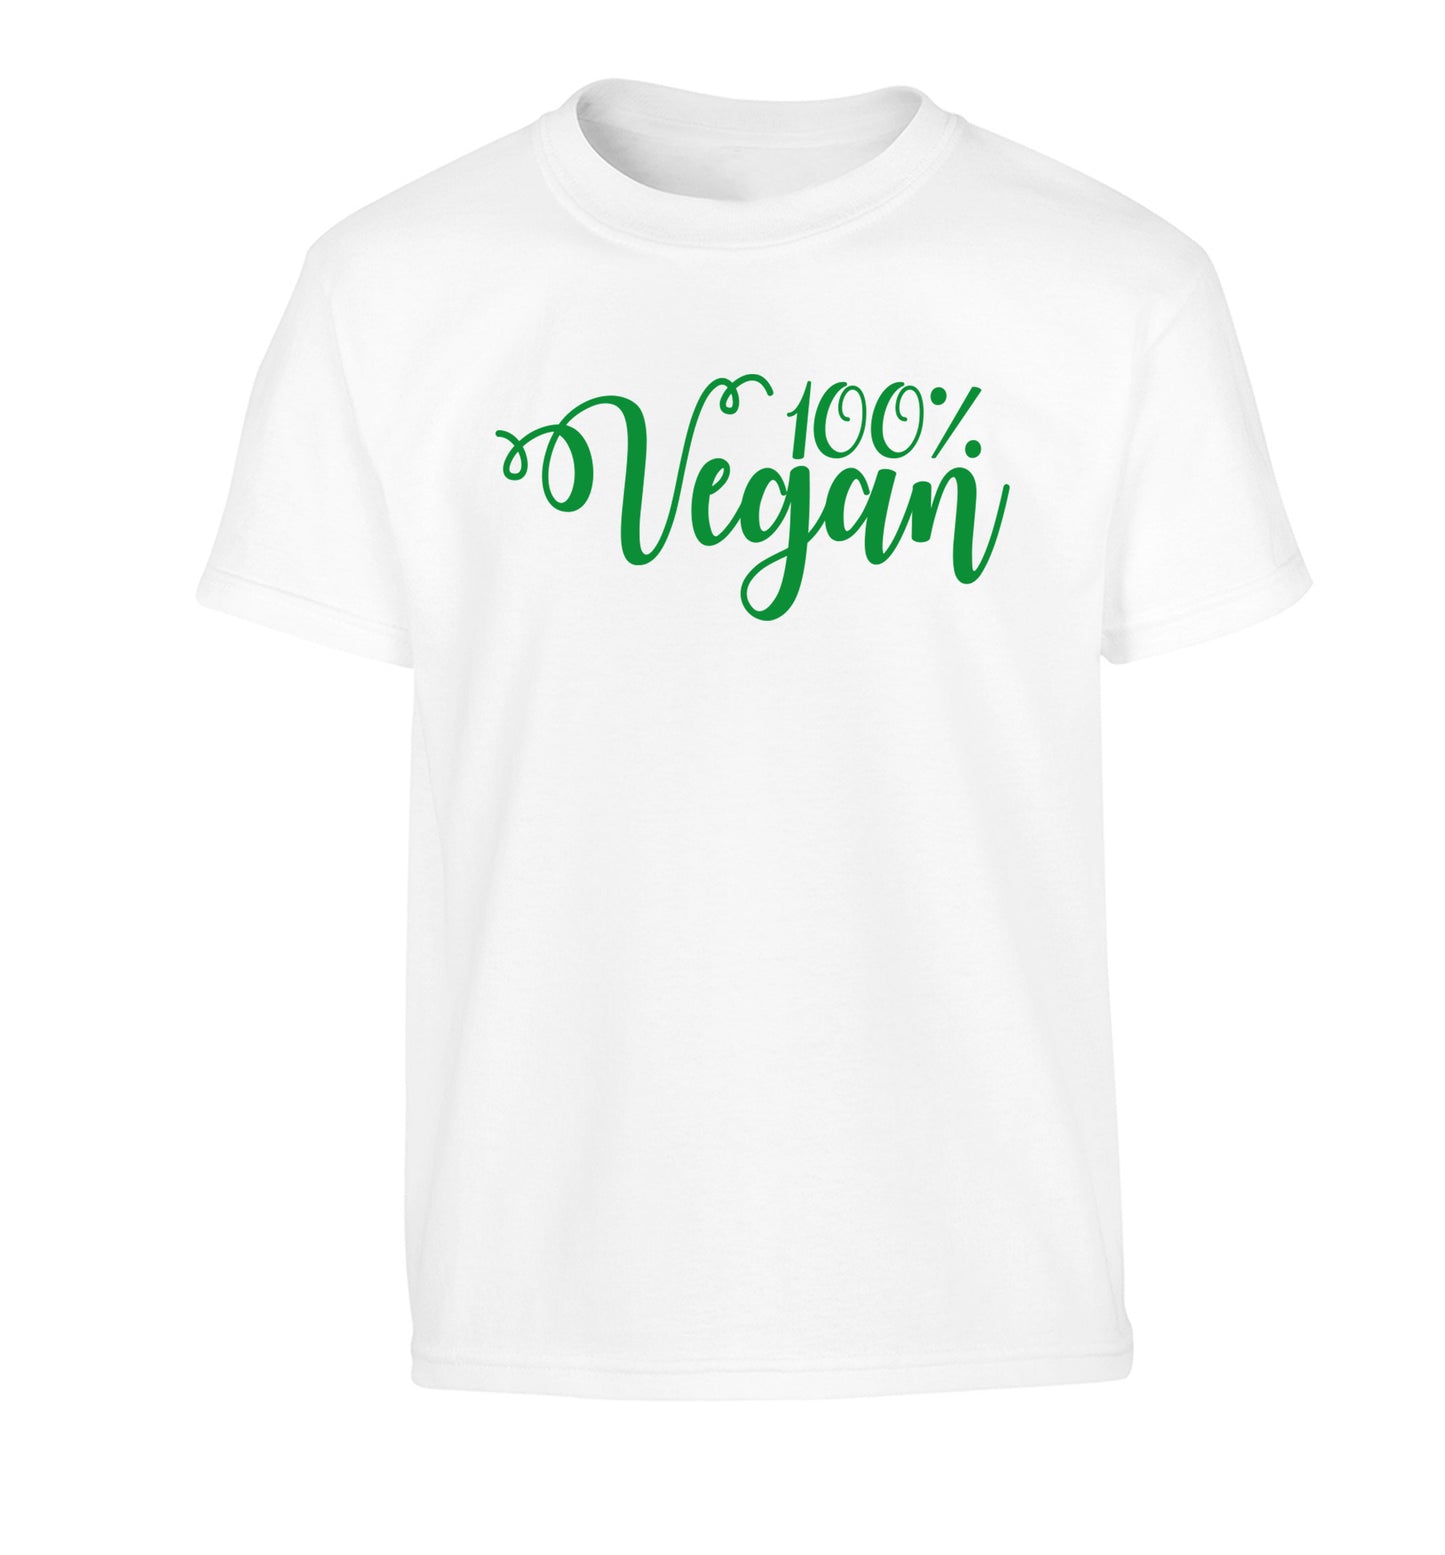 100% Vegan Children's white Tshirt 12-14 Years